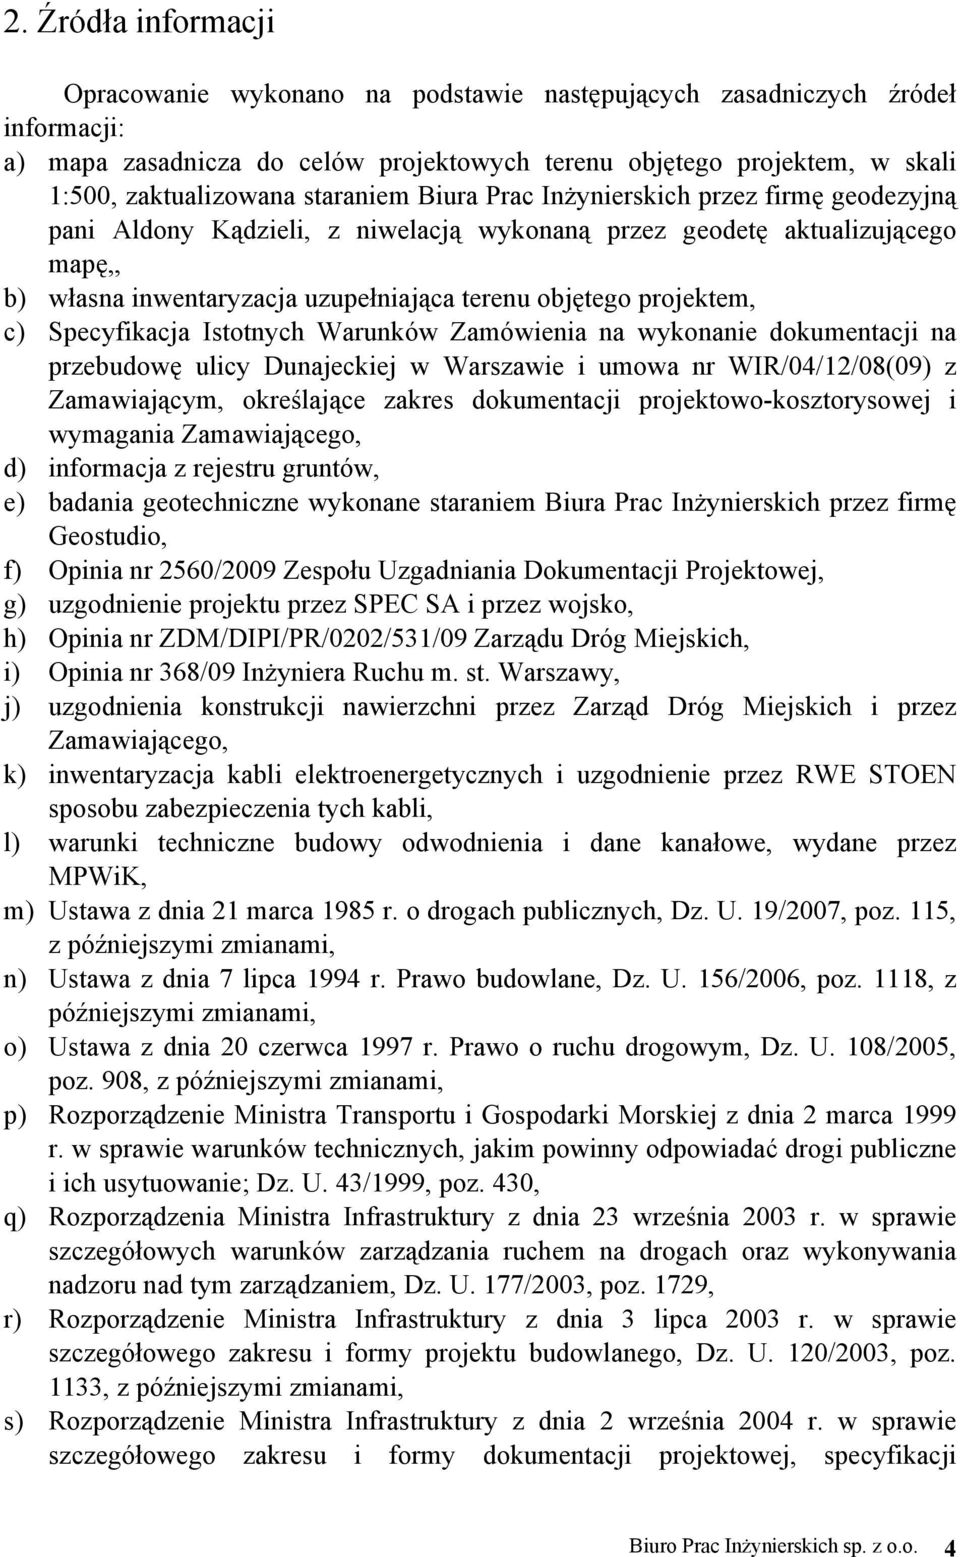 projektem, c) Specyfikacja Istotnych Warunków Zamówienia na wykonanie dokumentacji na przebudowę ulicy Dunajeckiej w Warszawie i umowa nr WIR/04/12/08(09) z Zamawiającym, określające zakres